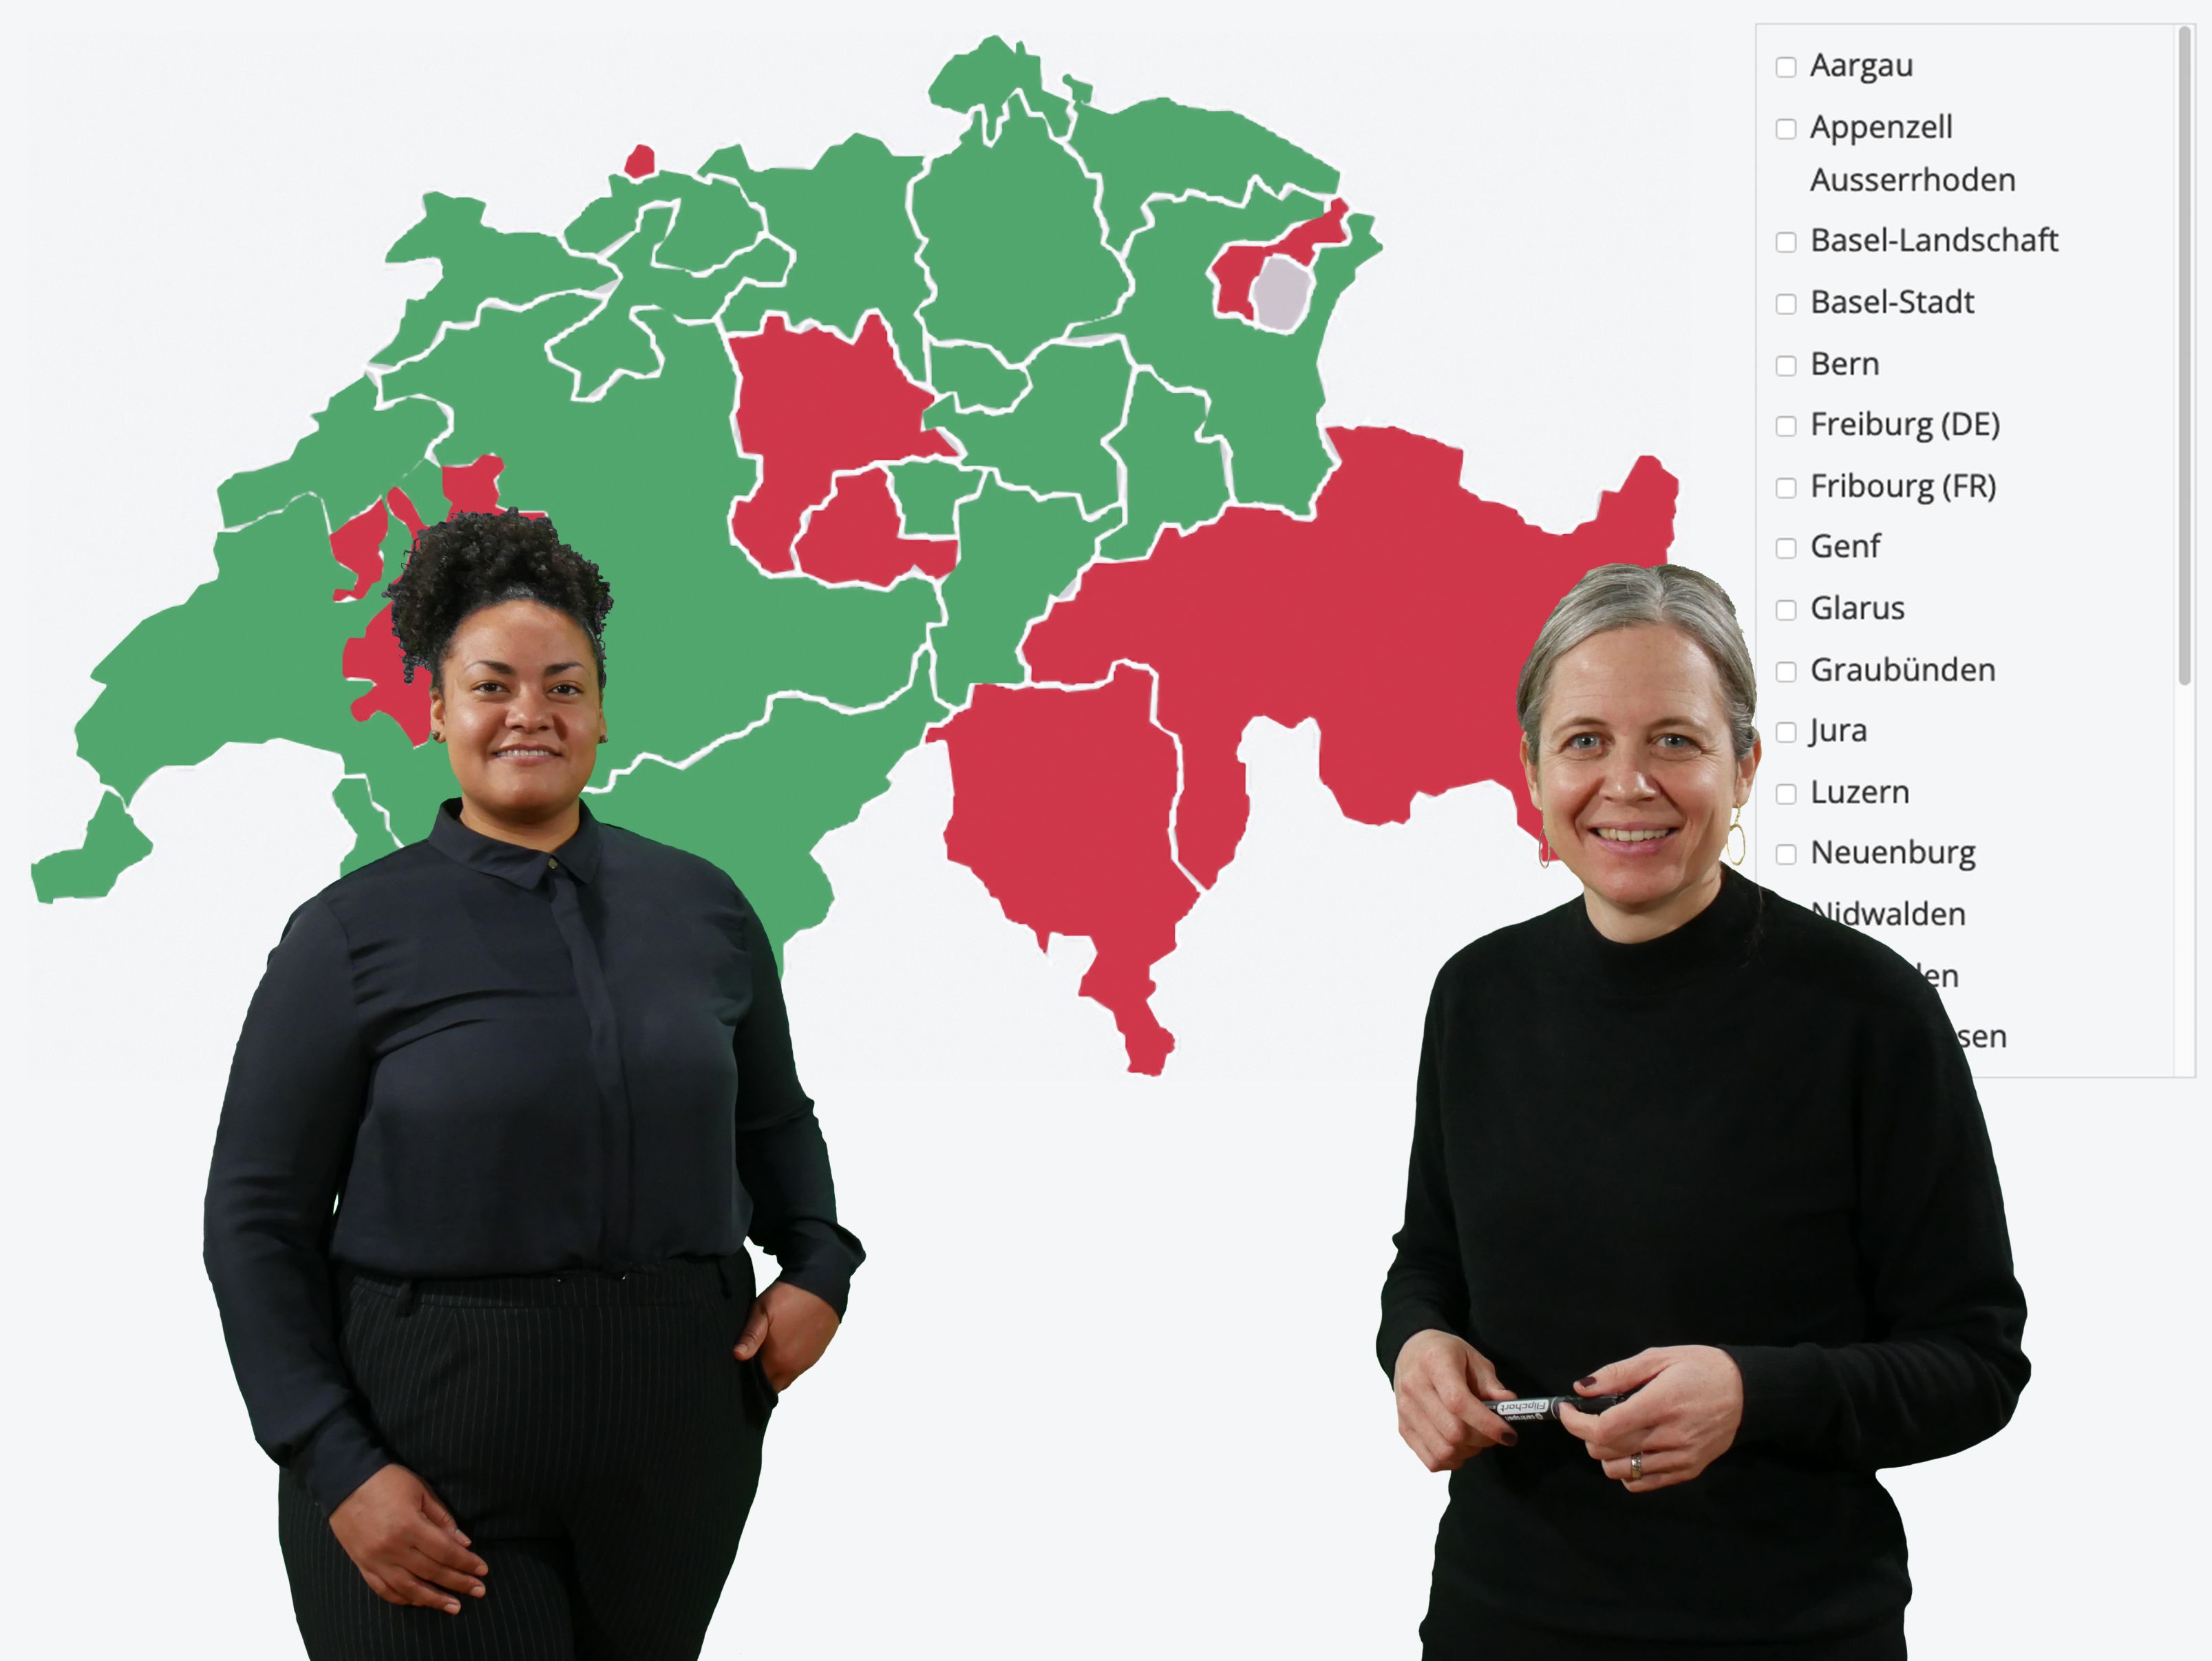 Bildbeschreibung: Beide Personen tragen dunkle Kleidung und stehen vor einer Präsentation, die eine Ansicht der interaktiven InSeMa-Landkarte zeigt. Auf dieser Landkarte sind einige Schweizer Kantone rot und die restlichen grün eingefärbt.